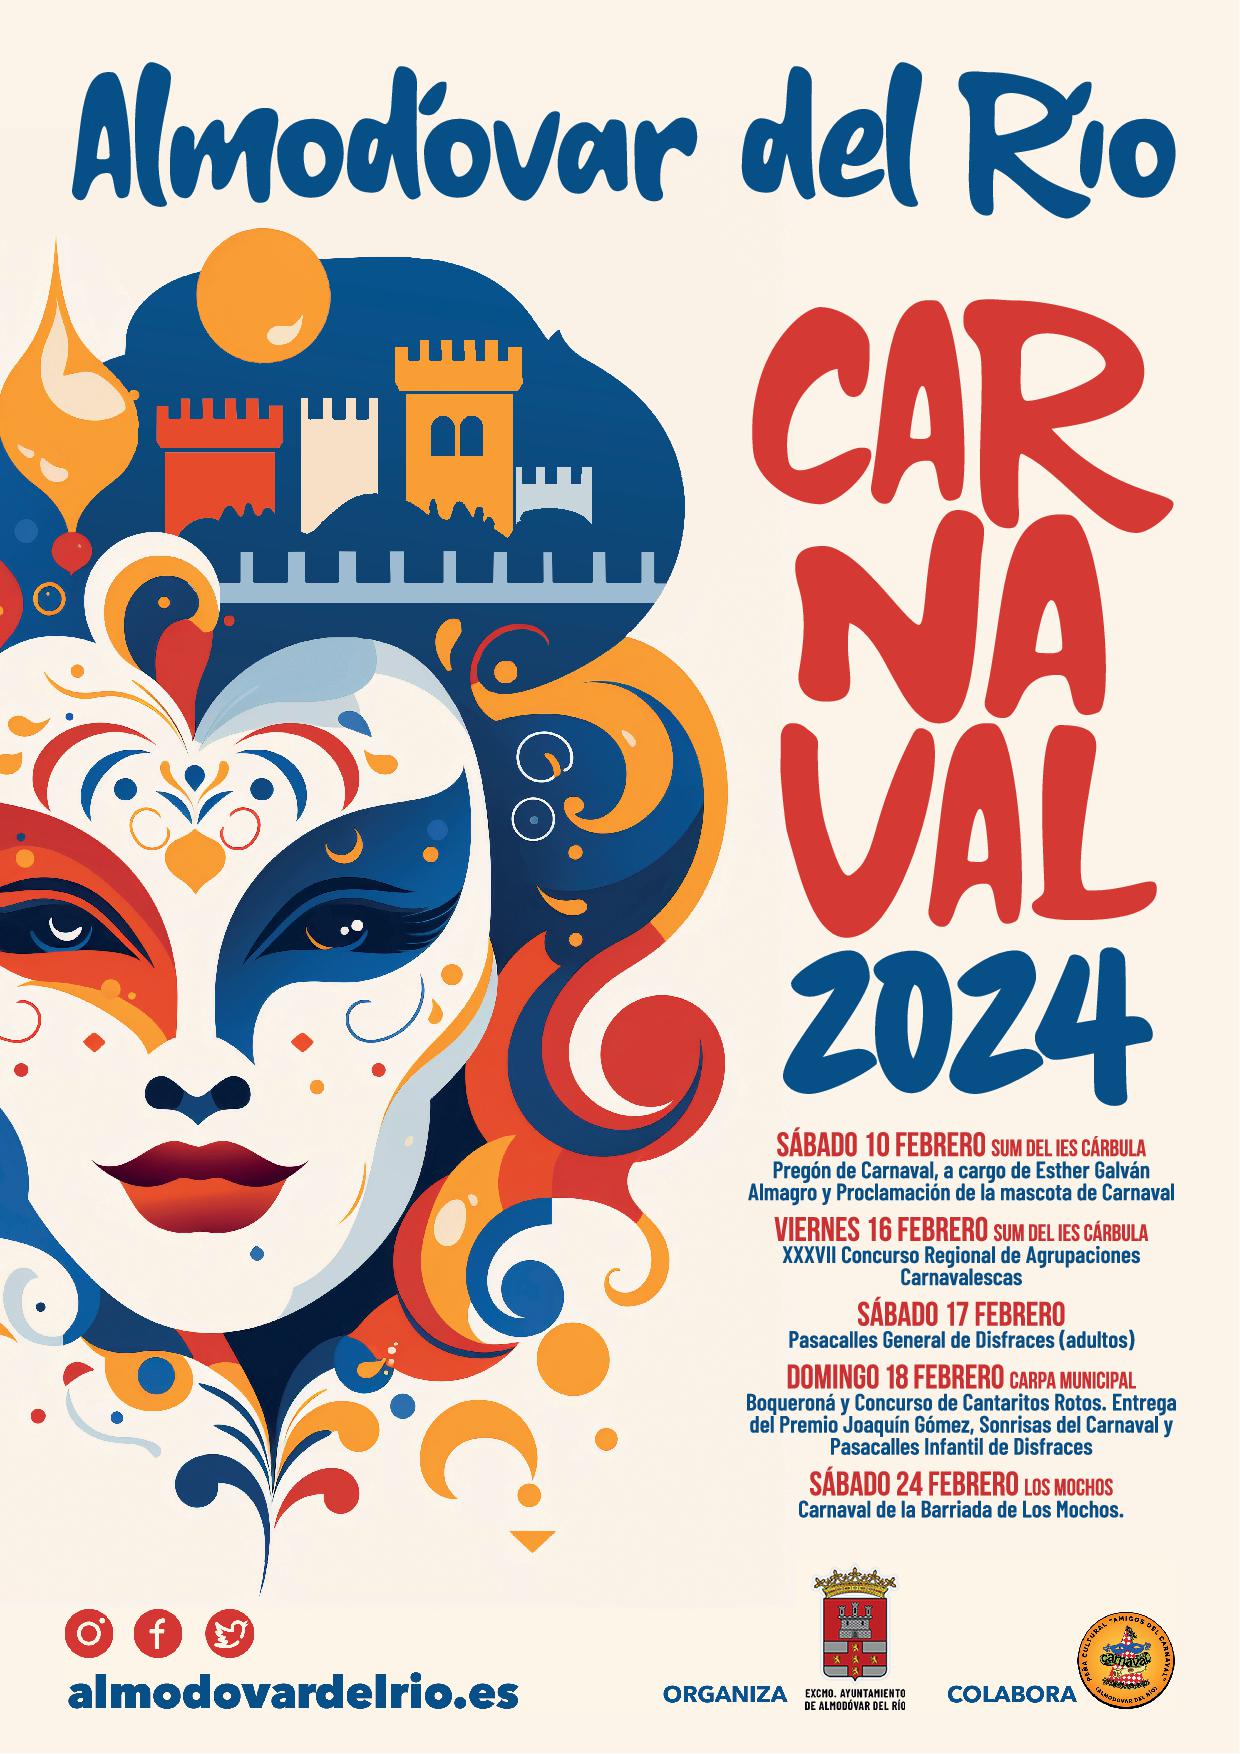 Carnaval en Almodóvar del Río: actividades, concursos y diversión para todos los públicos